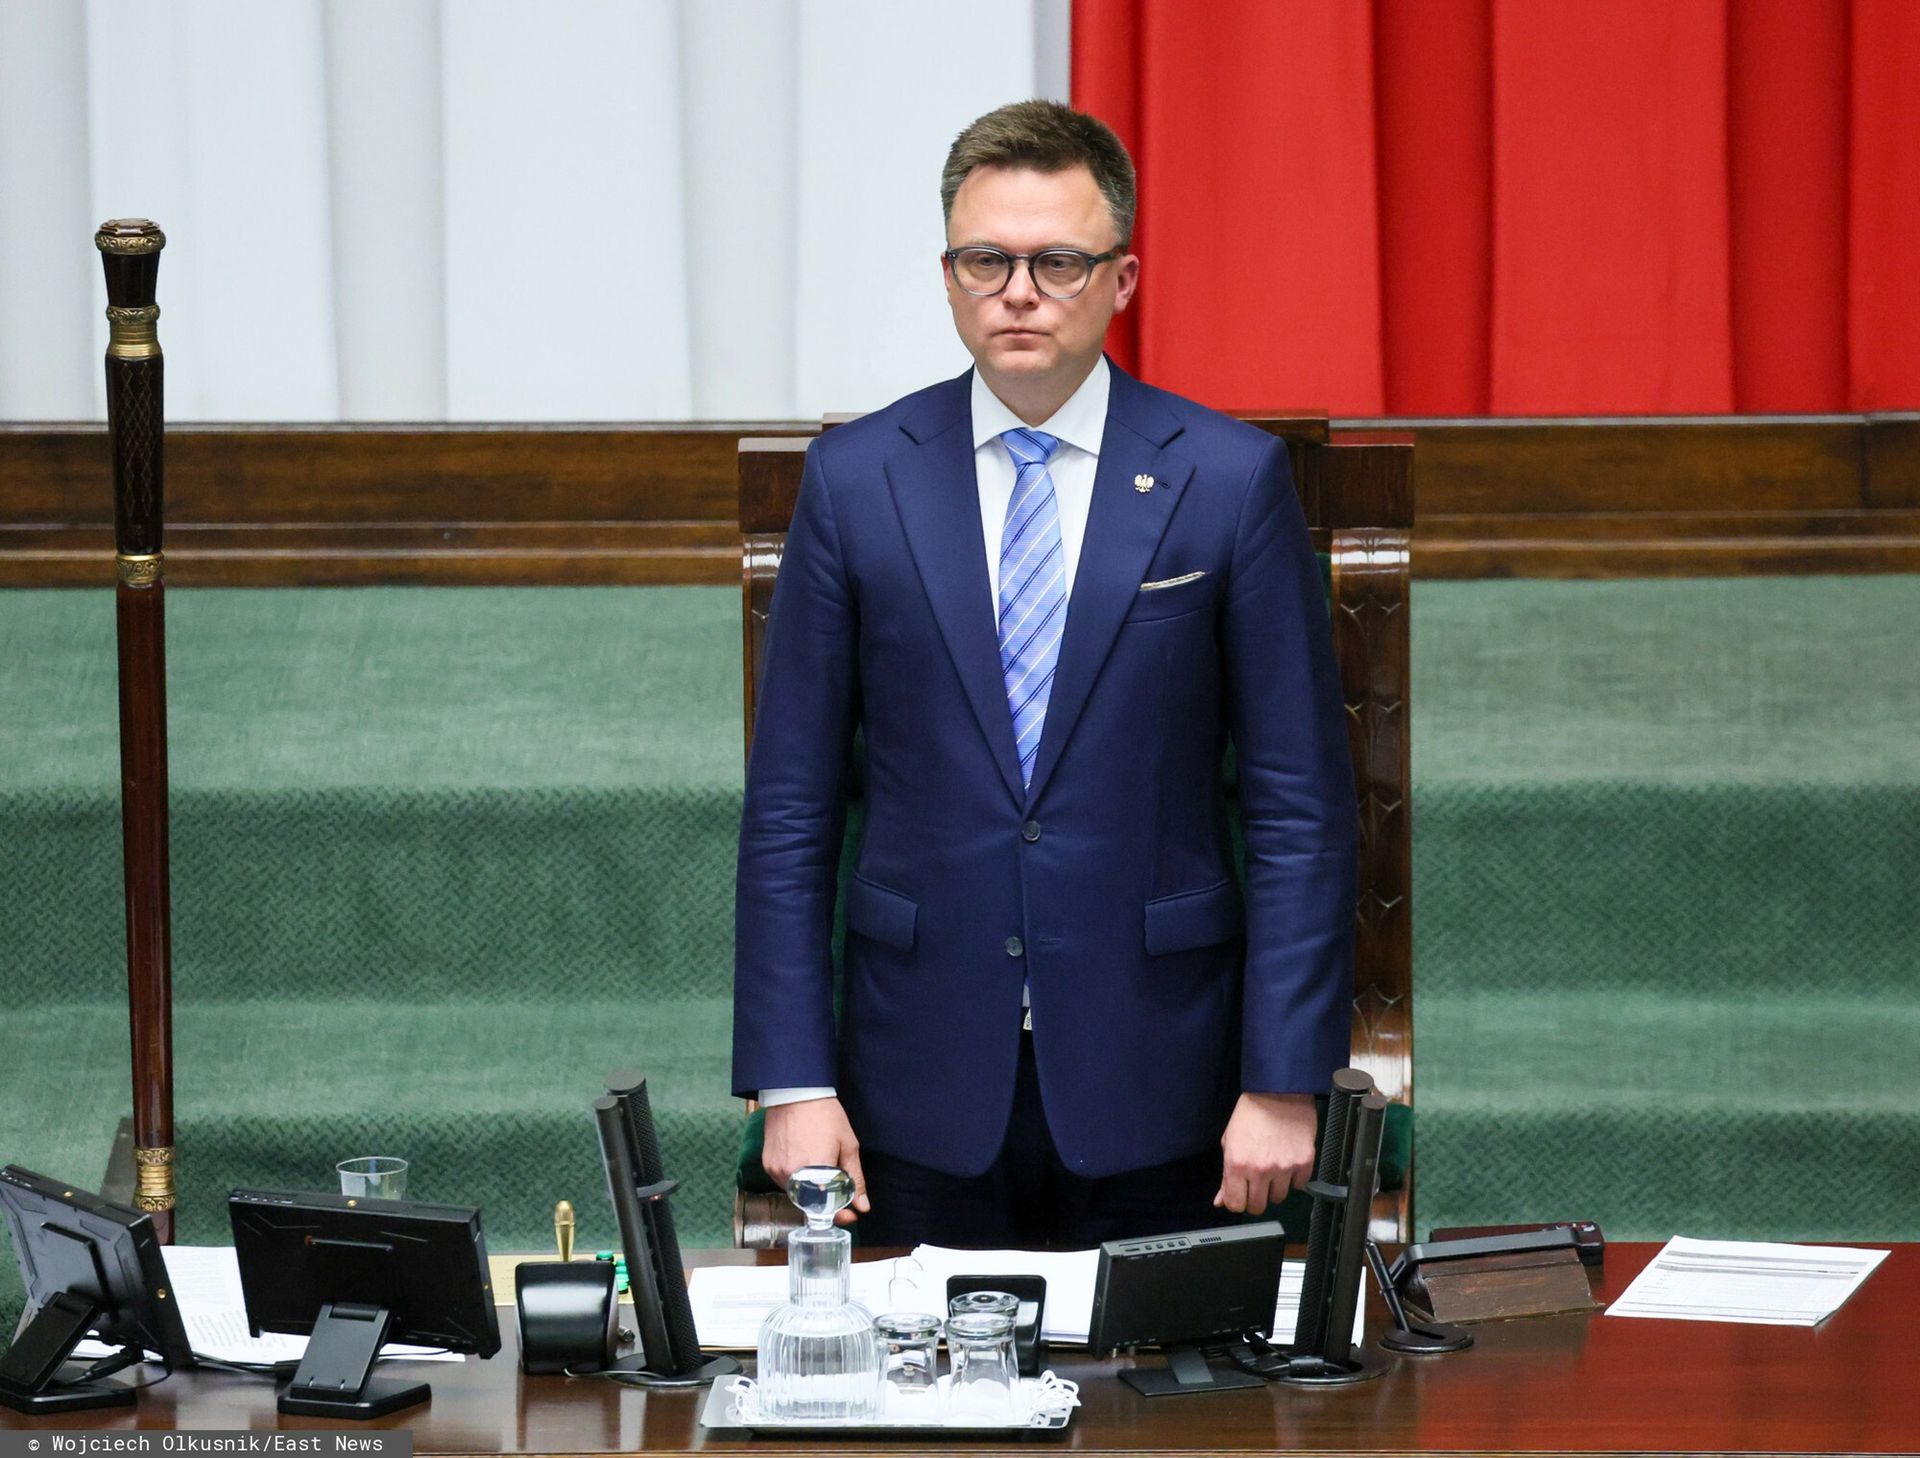 "Epokowa zmiana" w Sejmie. Fanatyk zdradził szczegóły